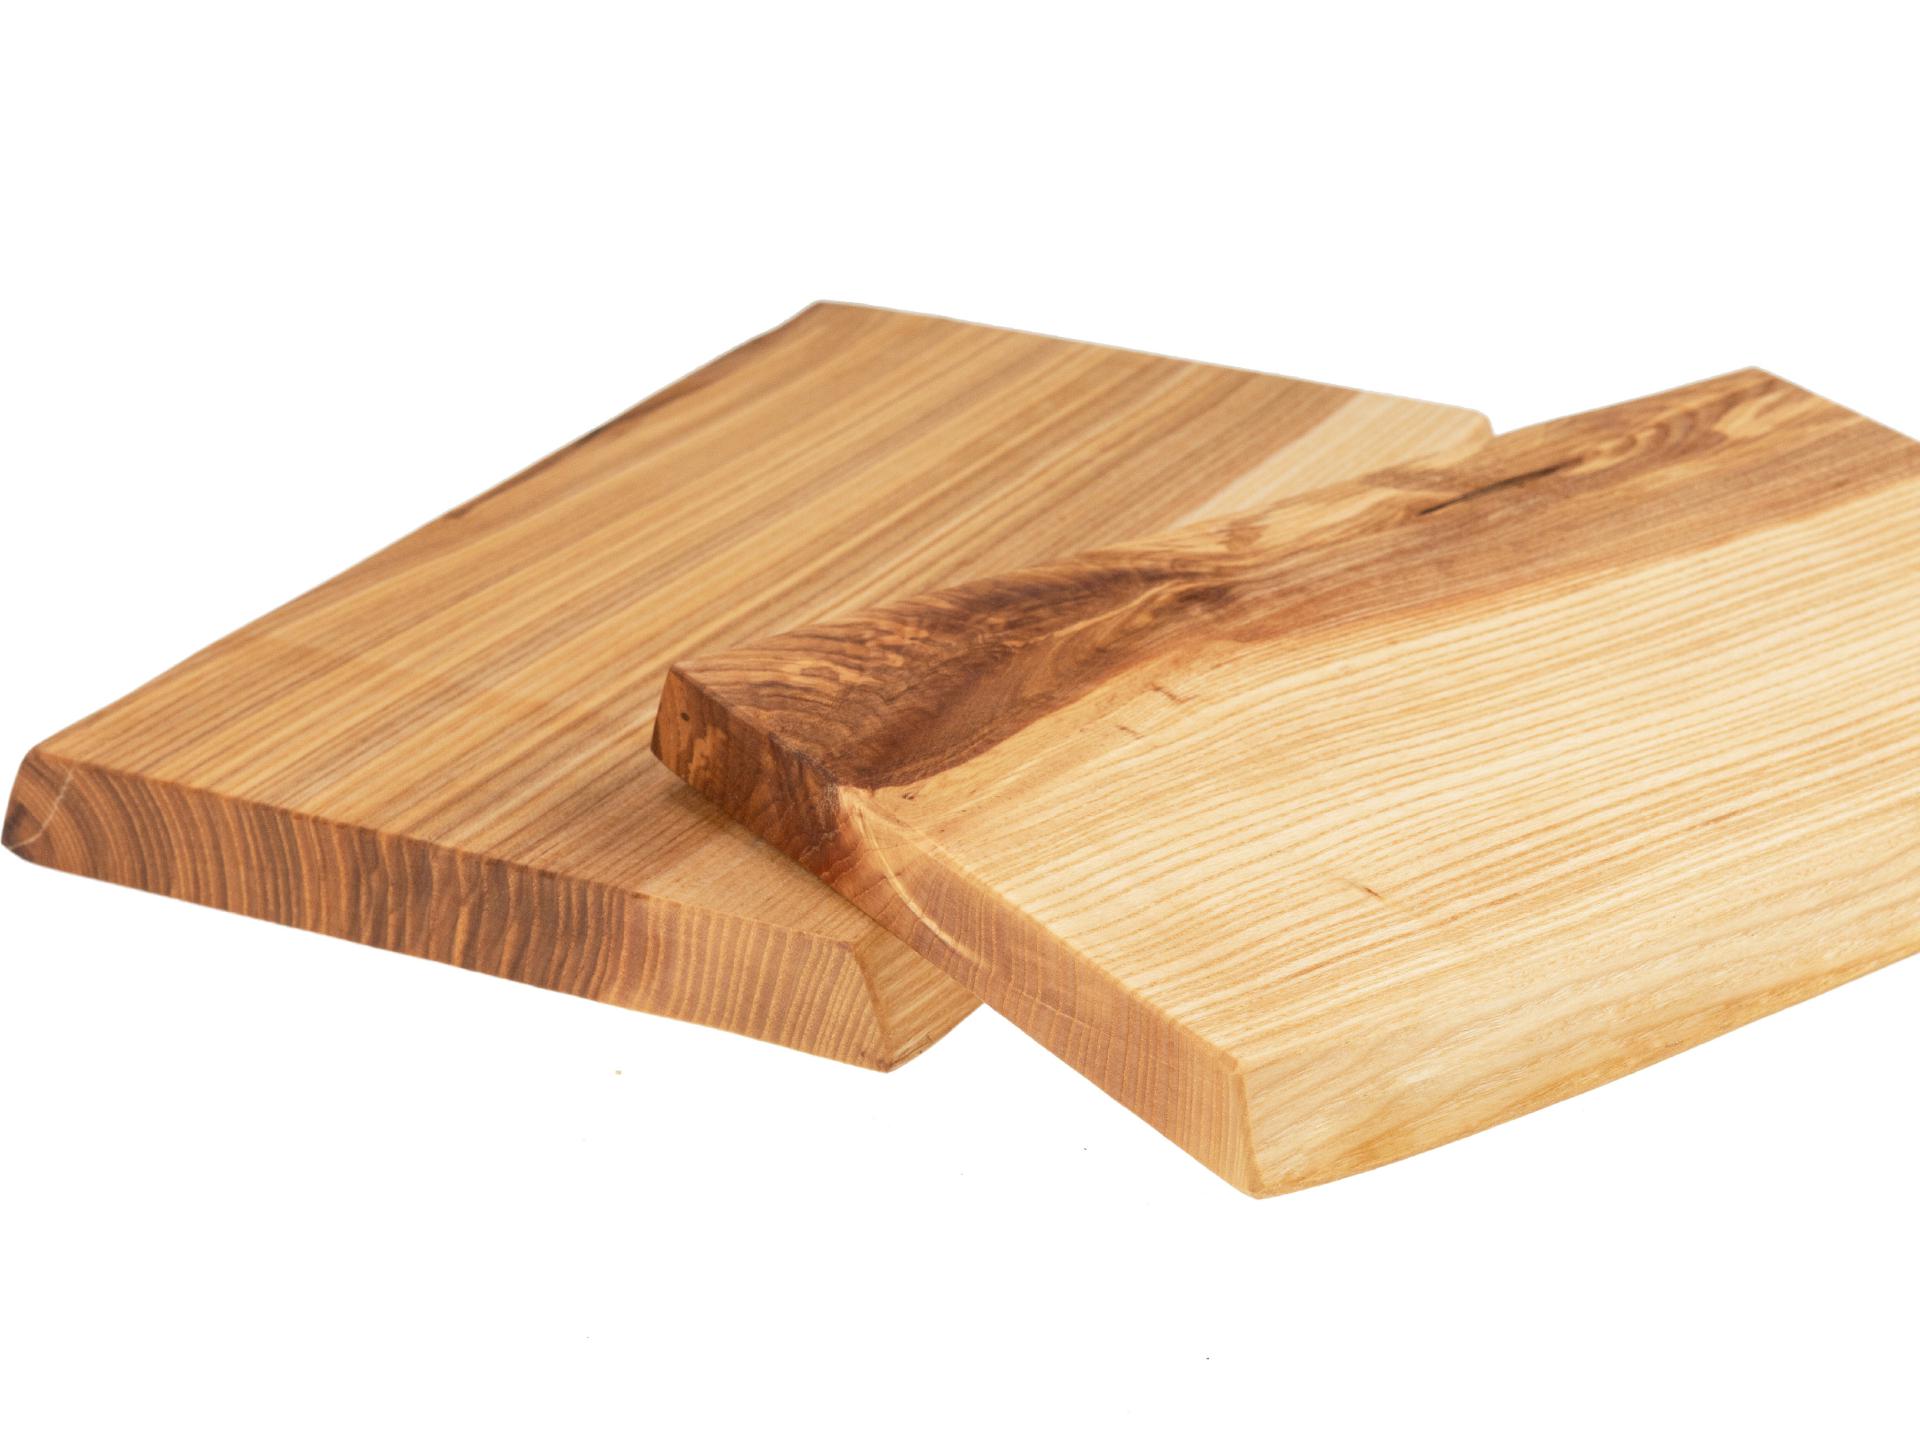 Holz Schneidebrett aus Kern Esche geölt mit Baumkante geschliffen 22mm dick 32 x 16-18 cm